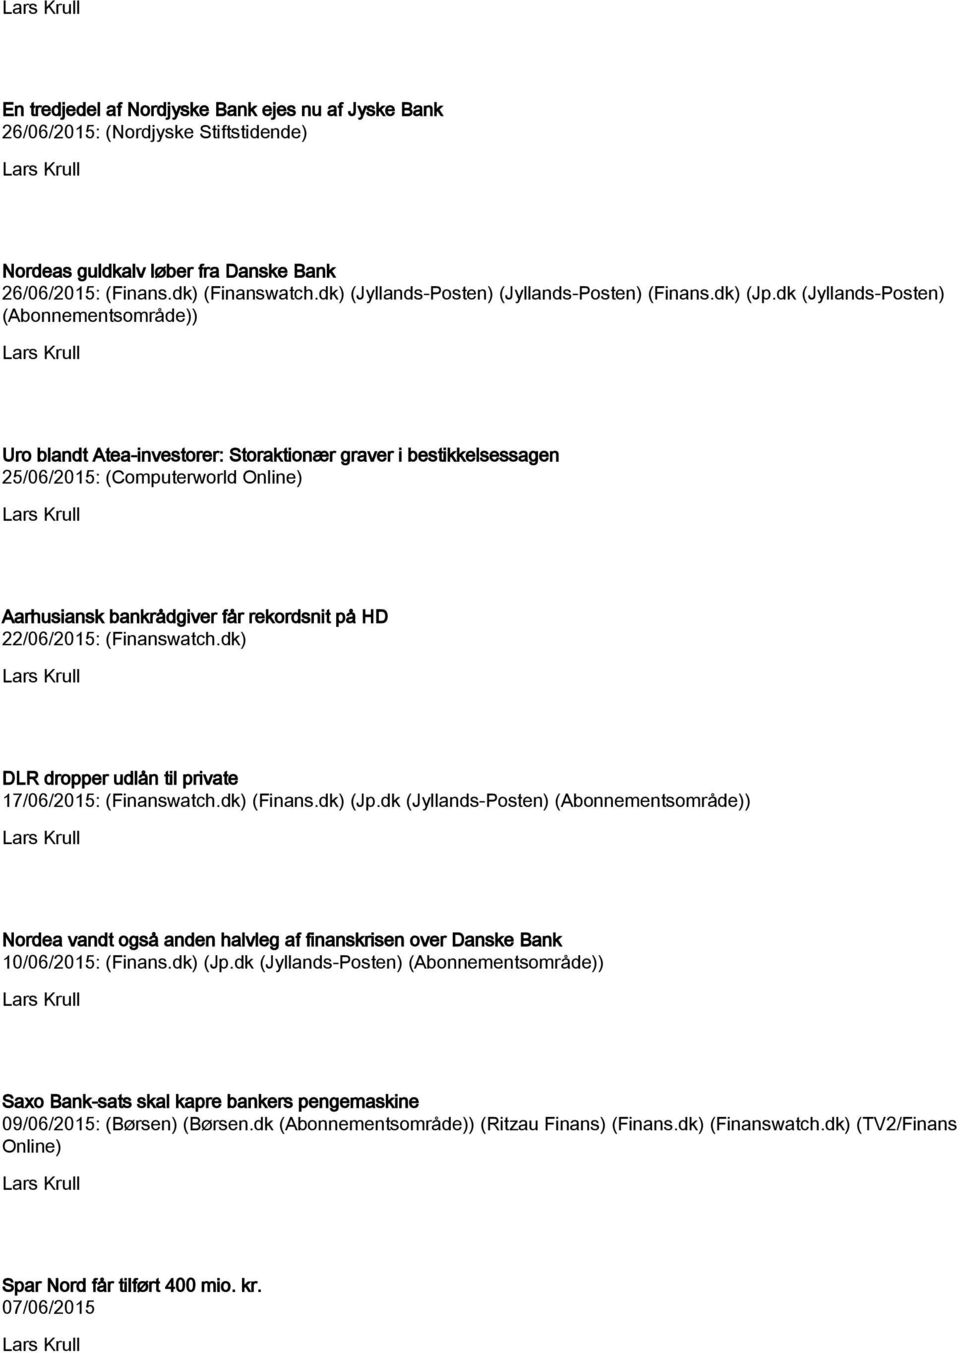 dk (Jyllands-Posten) (Abonnementsområde)) Uro blandt Atea-investorer: Storaktionær graver i bestikkelsessagen 25/06/2015: (Computerworld Online) Aarhusiansk bankrådgiver får rekordsnit på HD